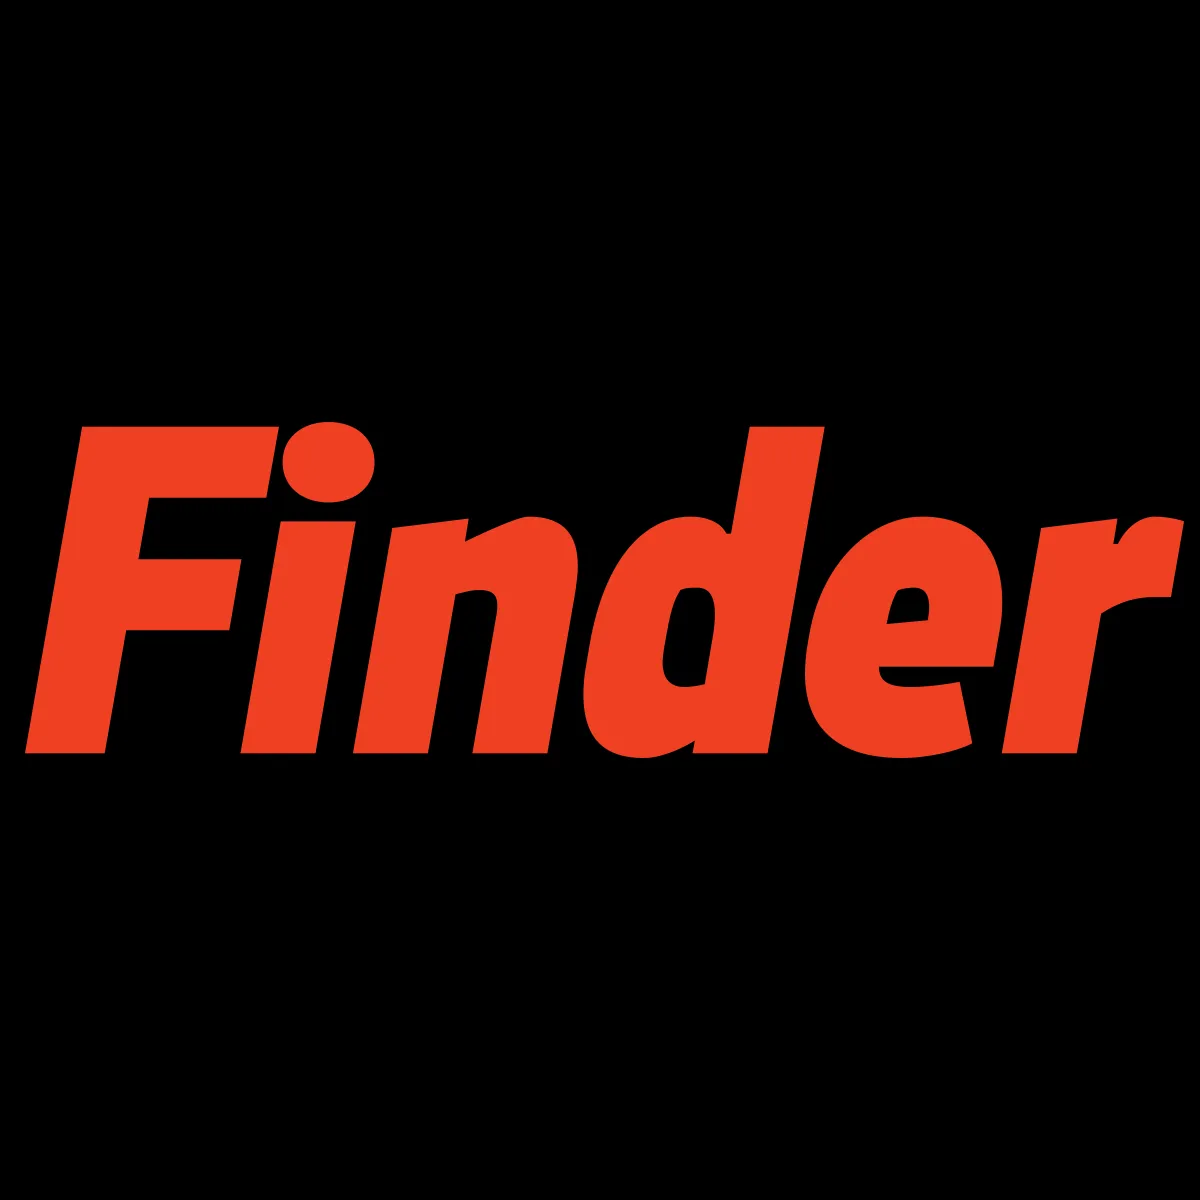 ㉵야마토 무료 게임㉺𝚛𝚊𝑦800.𝘵𝗈𝚙ㆅ핸드폰바다이야기ㄸ무료충전 바다이야기㈗릴게임추천사이트㈀파칭코사이트ㅴ모바일 바다 이야기 다운 - Finder.fi